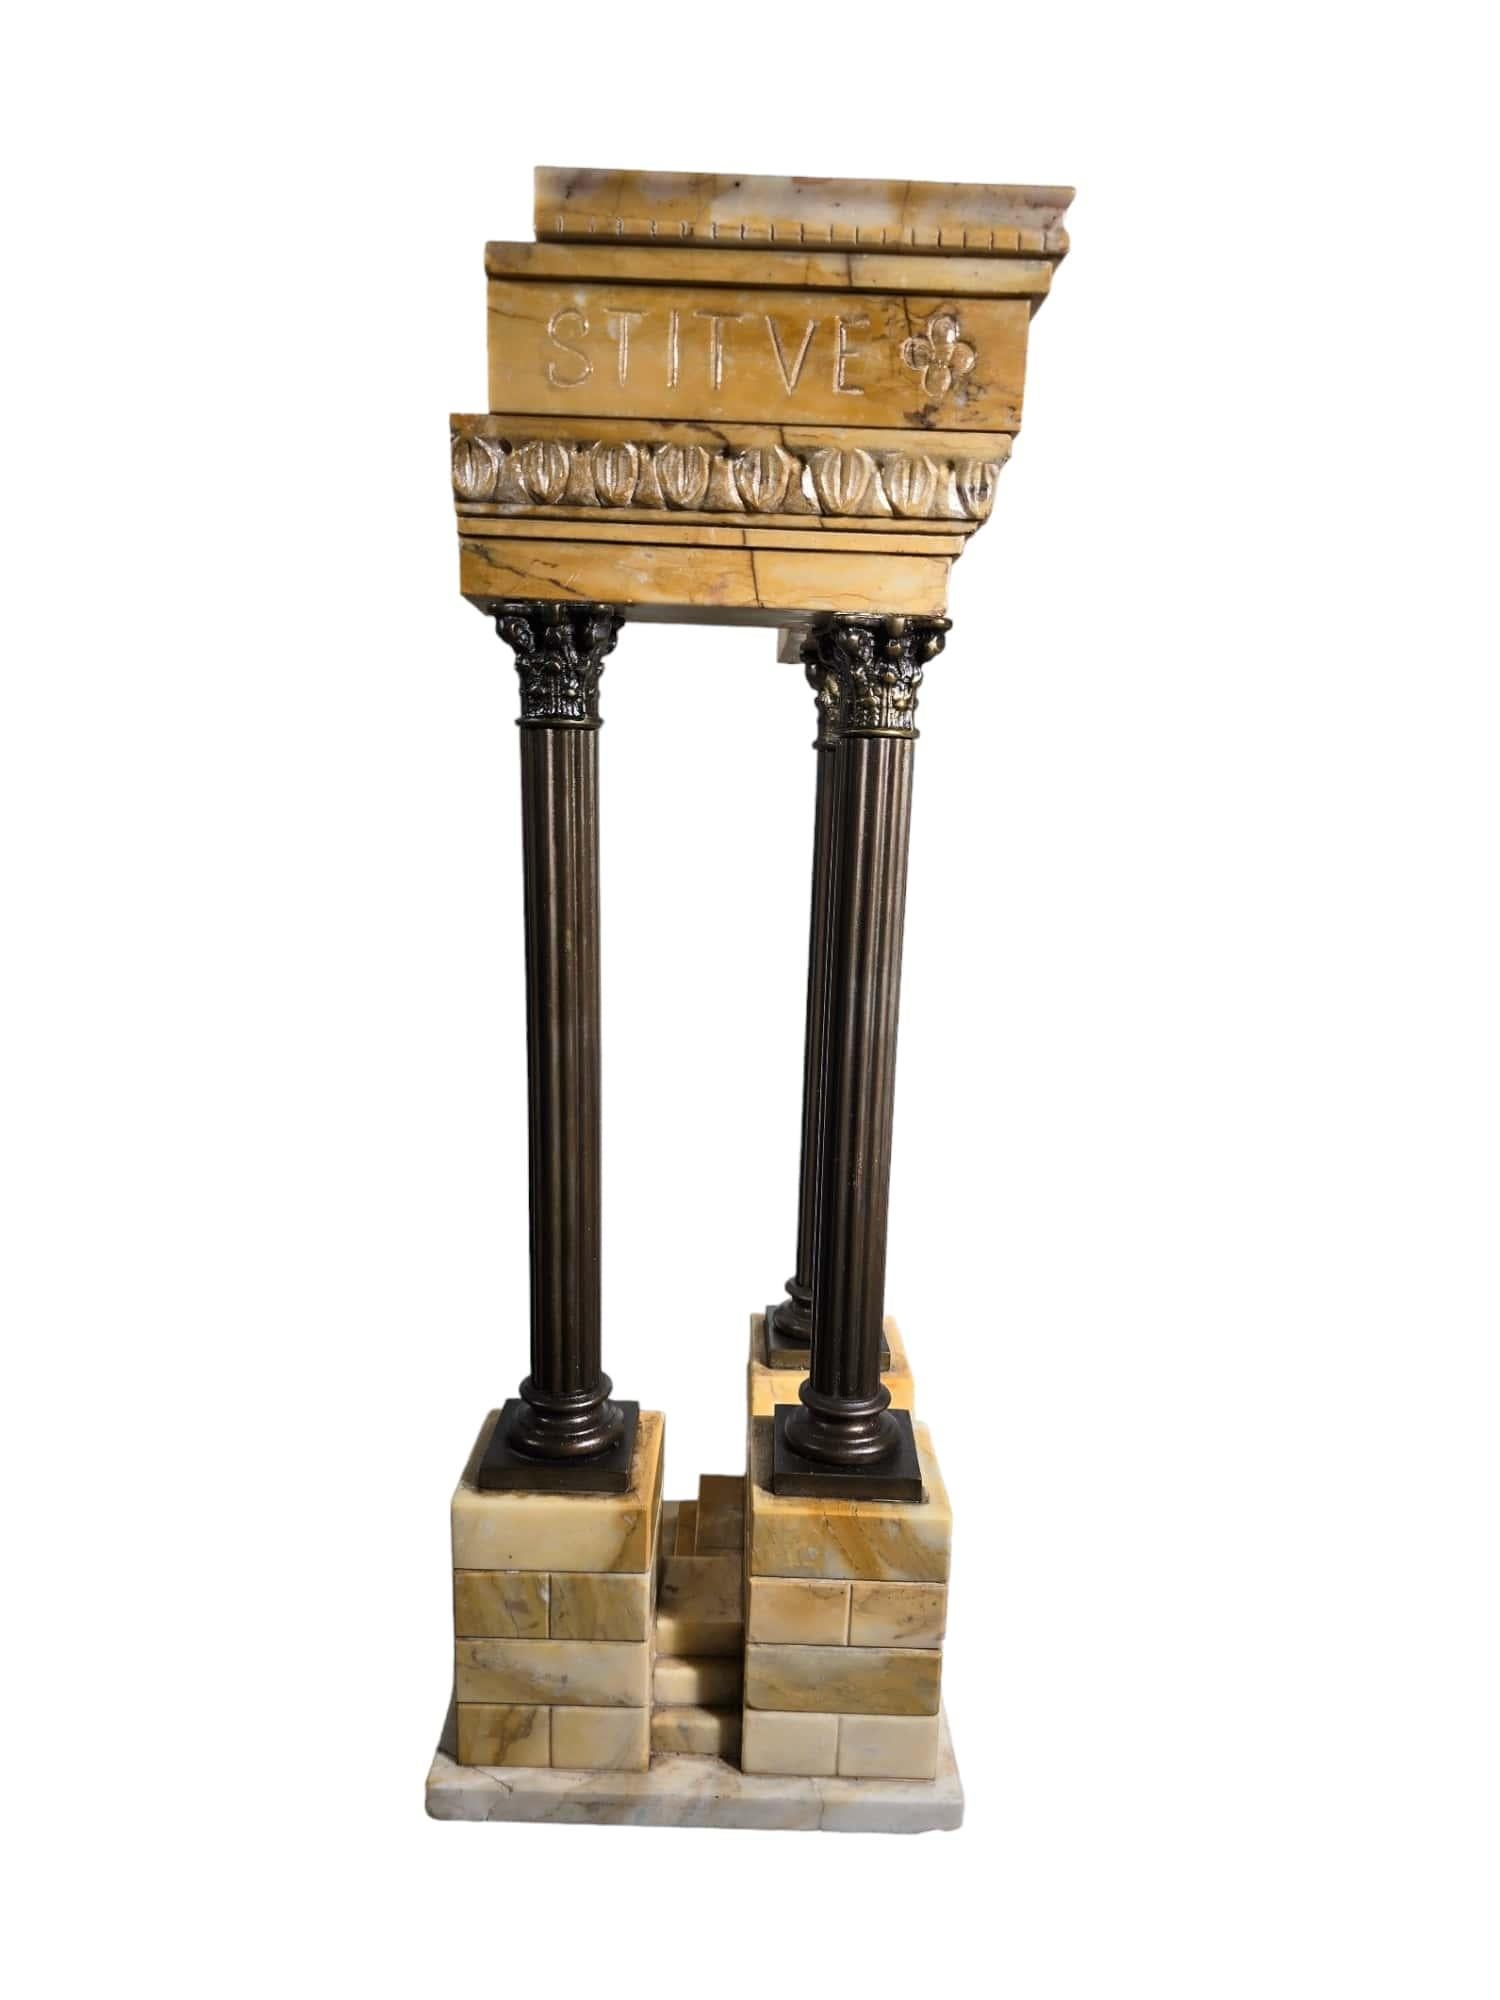 Ce modèle exquis du temple de Vespasien, réalisé en marbre Giallo Antico et en bronze, illustre le savoir-faire exceptionnel et la maîtrise artistique de l'époque du Grand Tour. Créée dans un atelier italien vers 1920, cette pièce témoigne de la